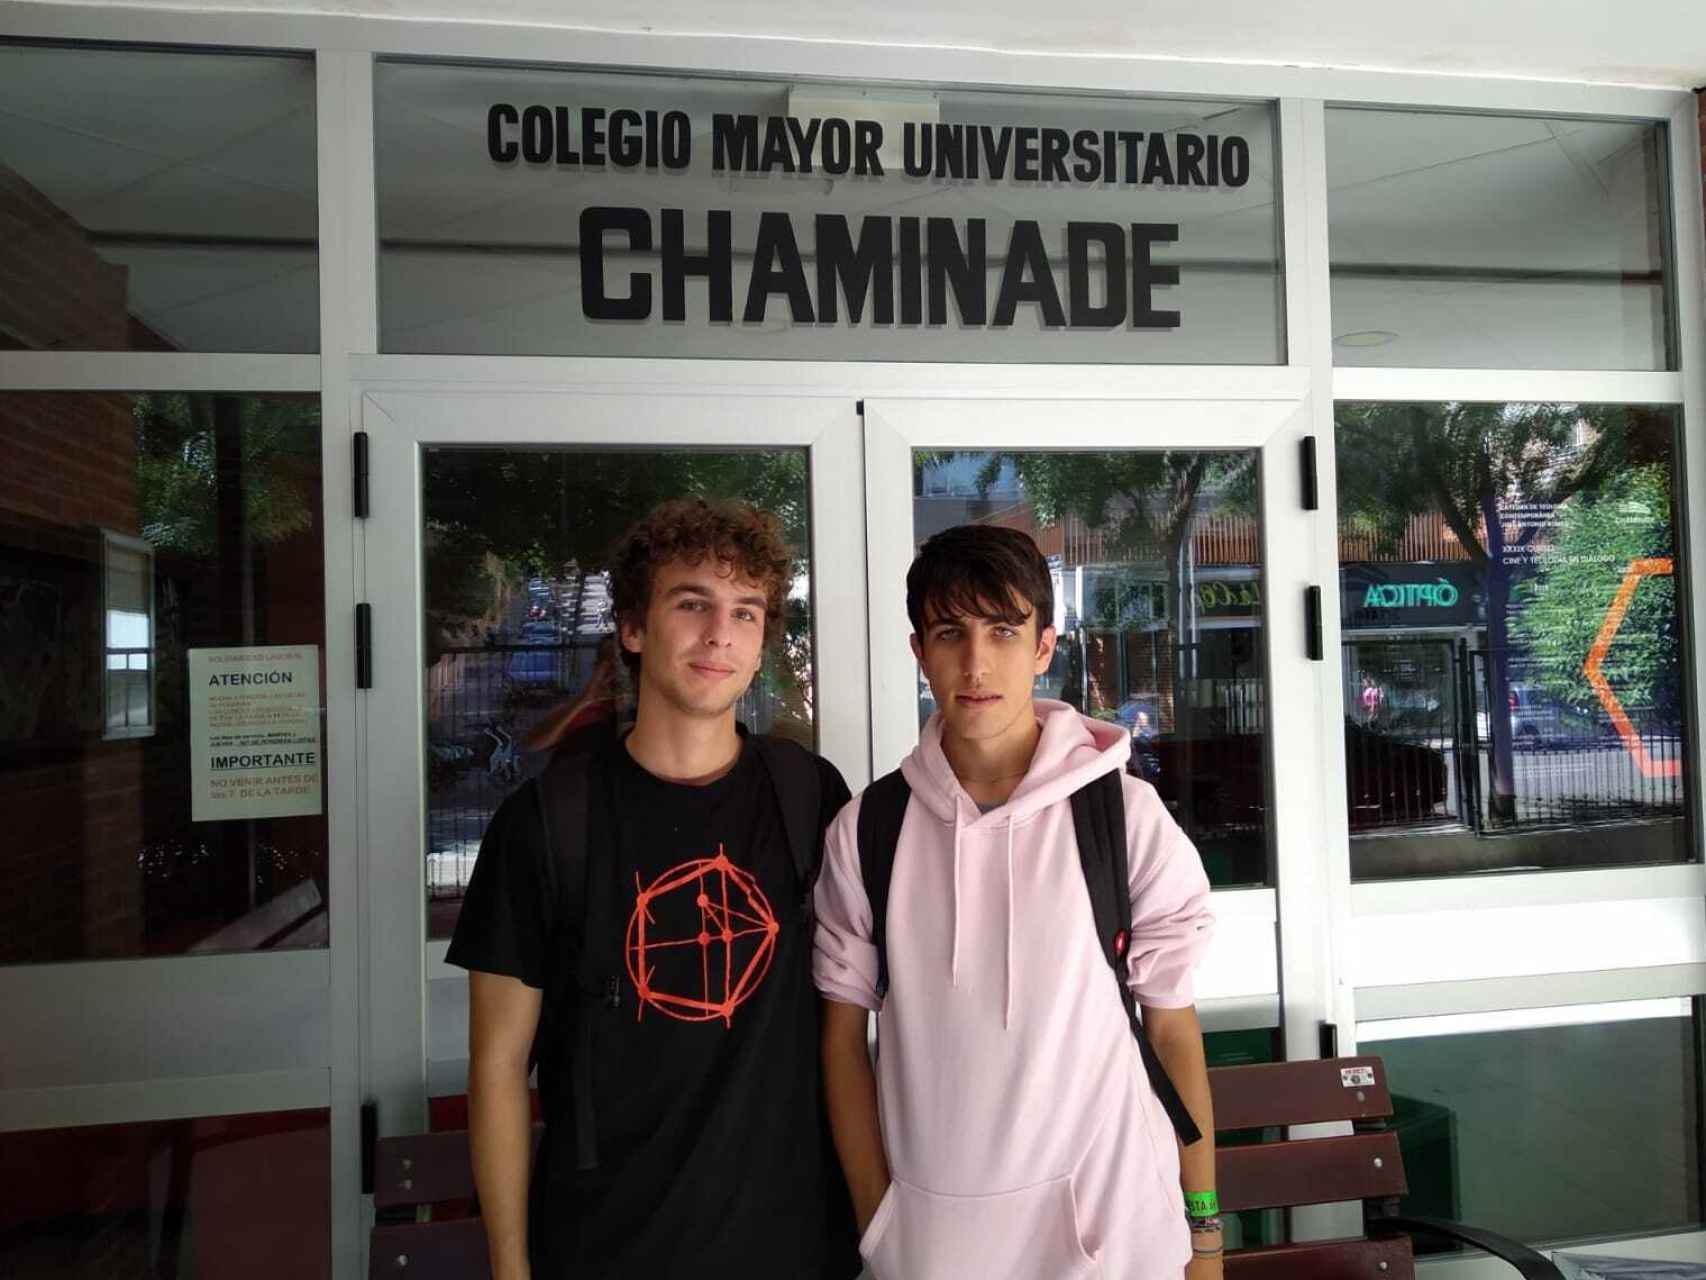 Alberto vive en el Colegio Mayor Chaminade y Aitor en piso compartido. Ambos estudian Matemáticas.